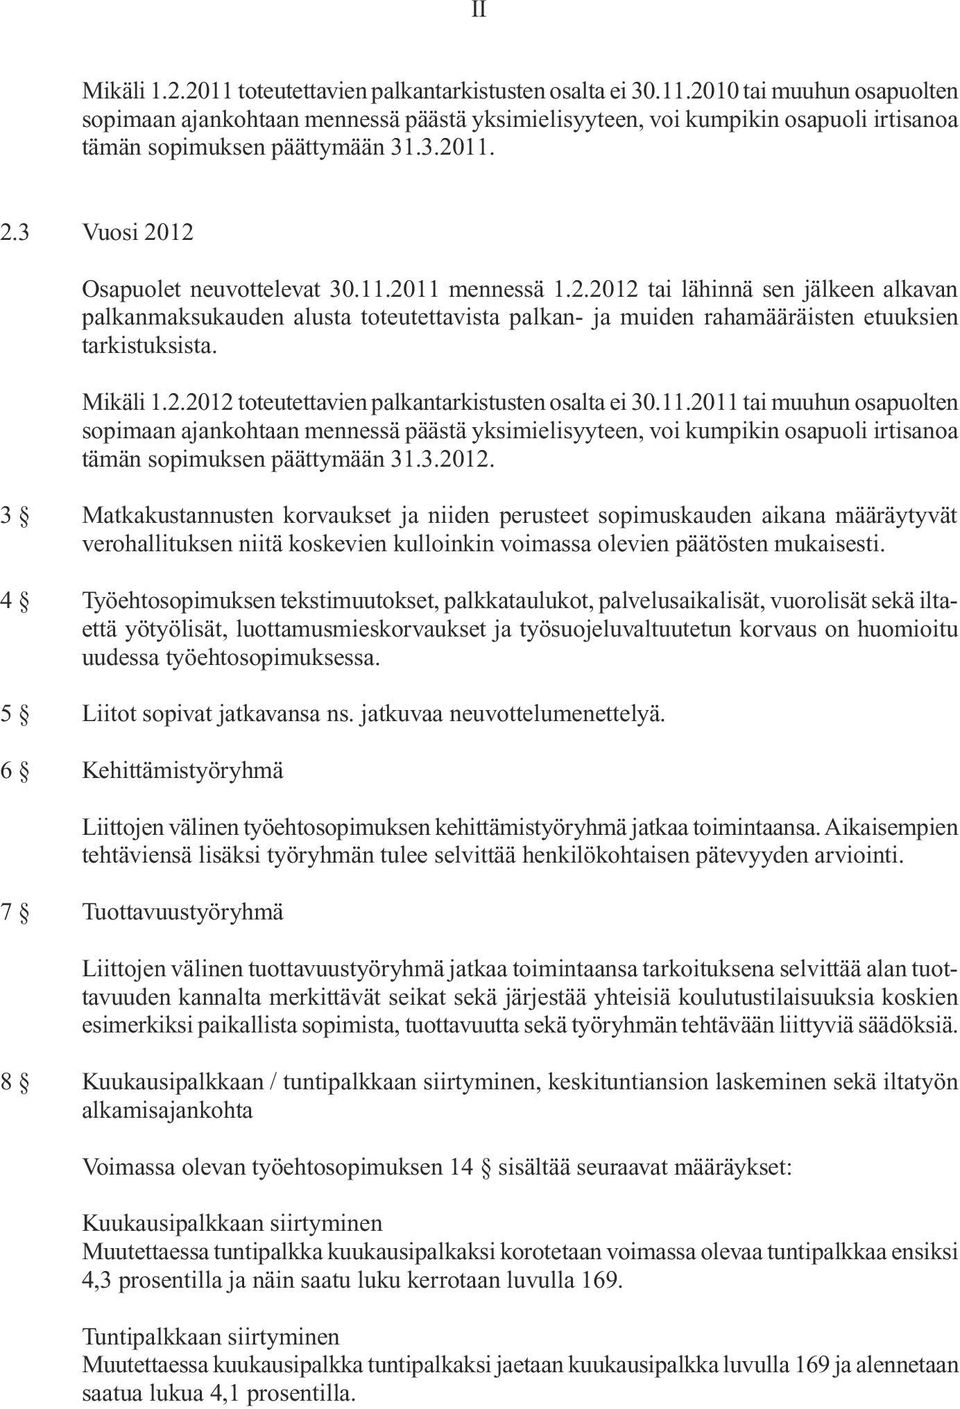 Mikäli 1.2.2012 toteutettavien palkantarkistusten osalta ei 30.11.